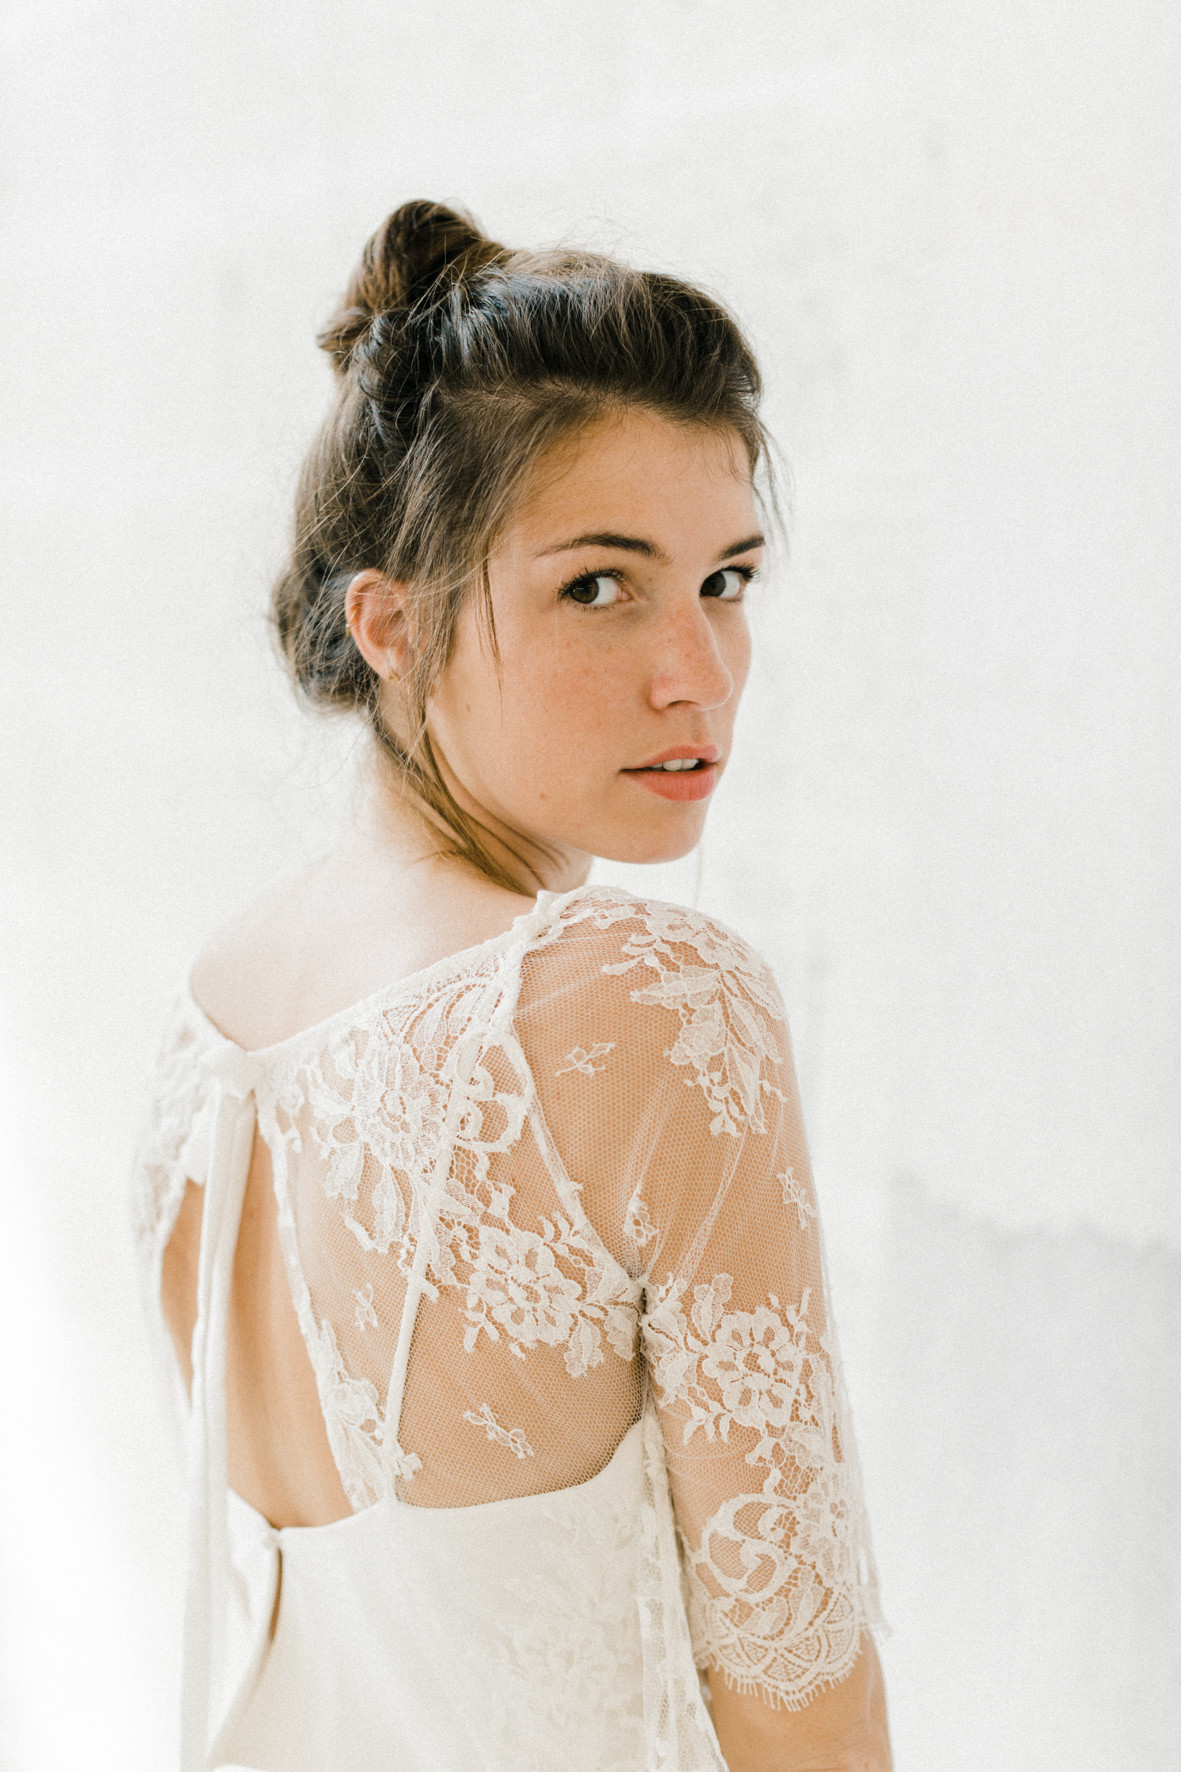 Mélanie robe de mariée collection 2019